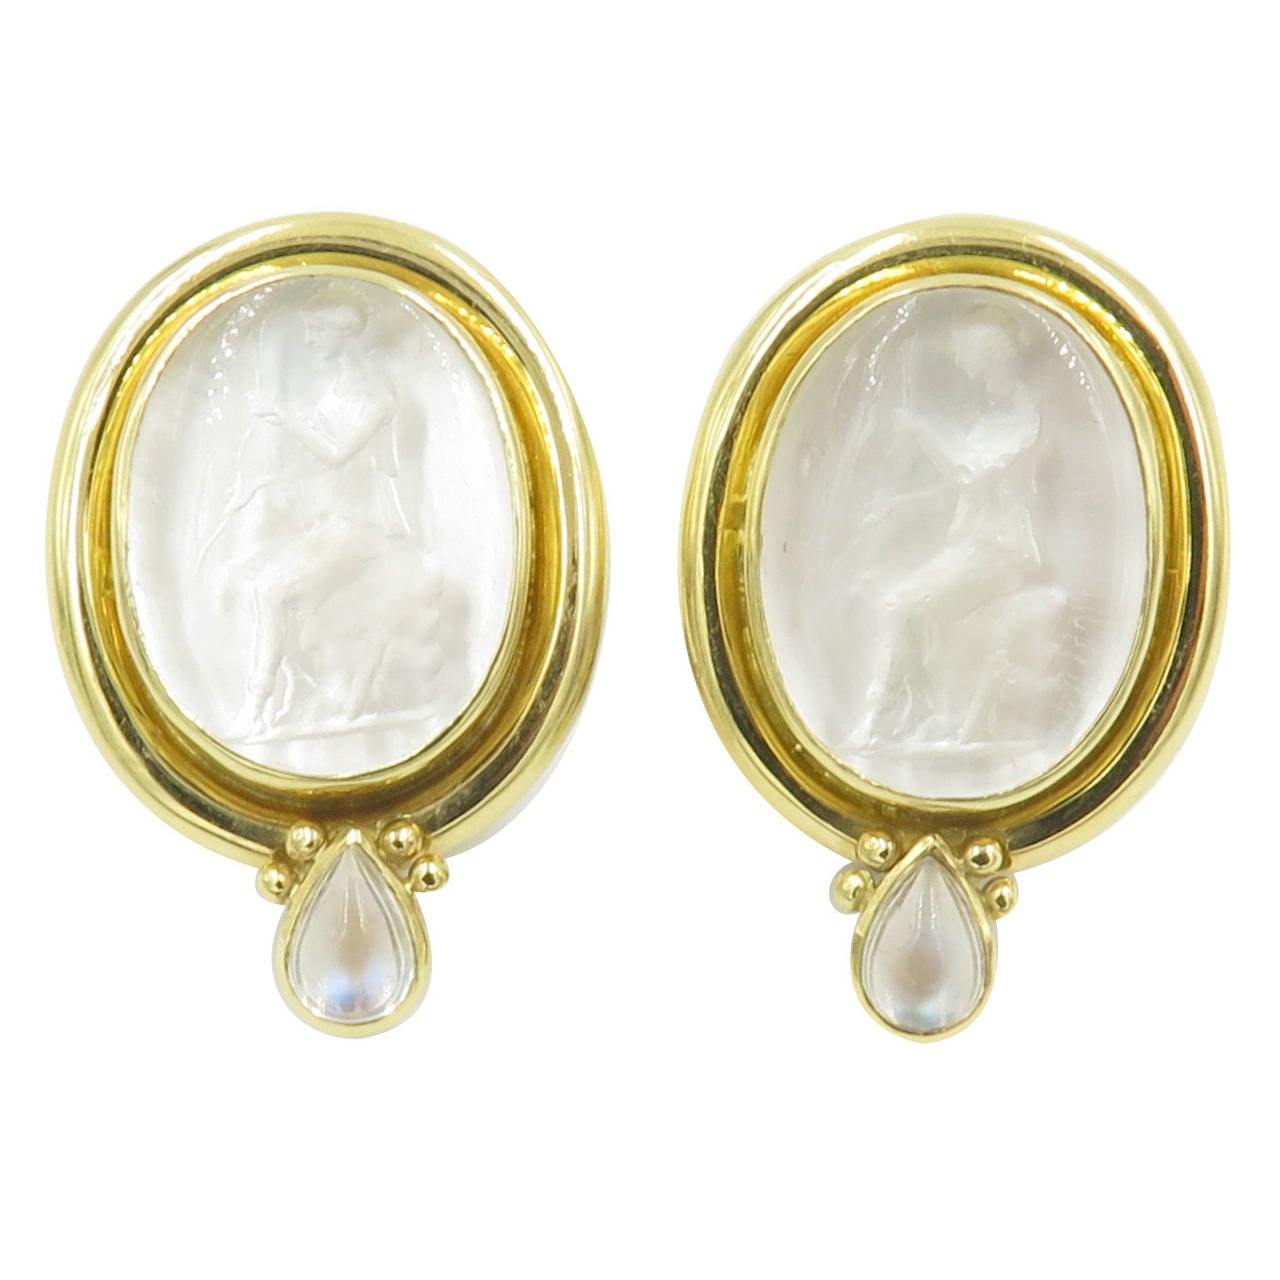 Elizabeth Locke Venetian Glass Intaglio Moonstone Mother of Pearl Gold Earrings.